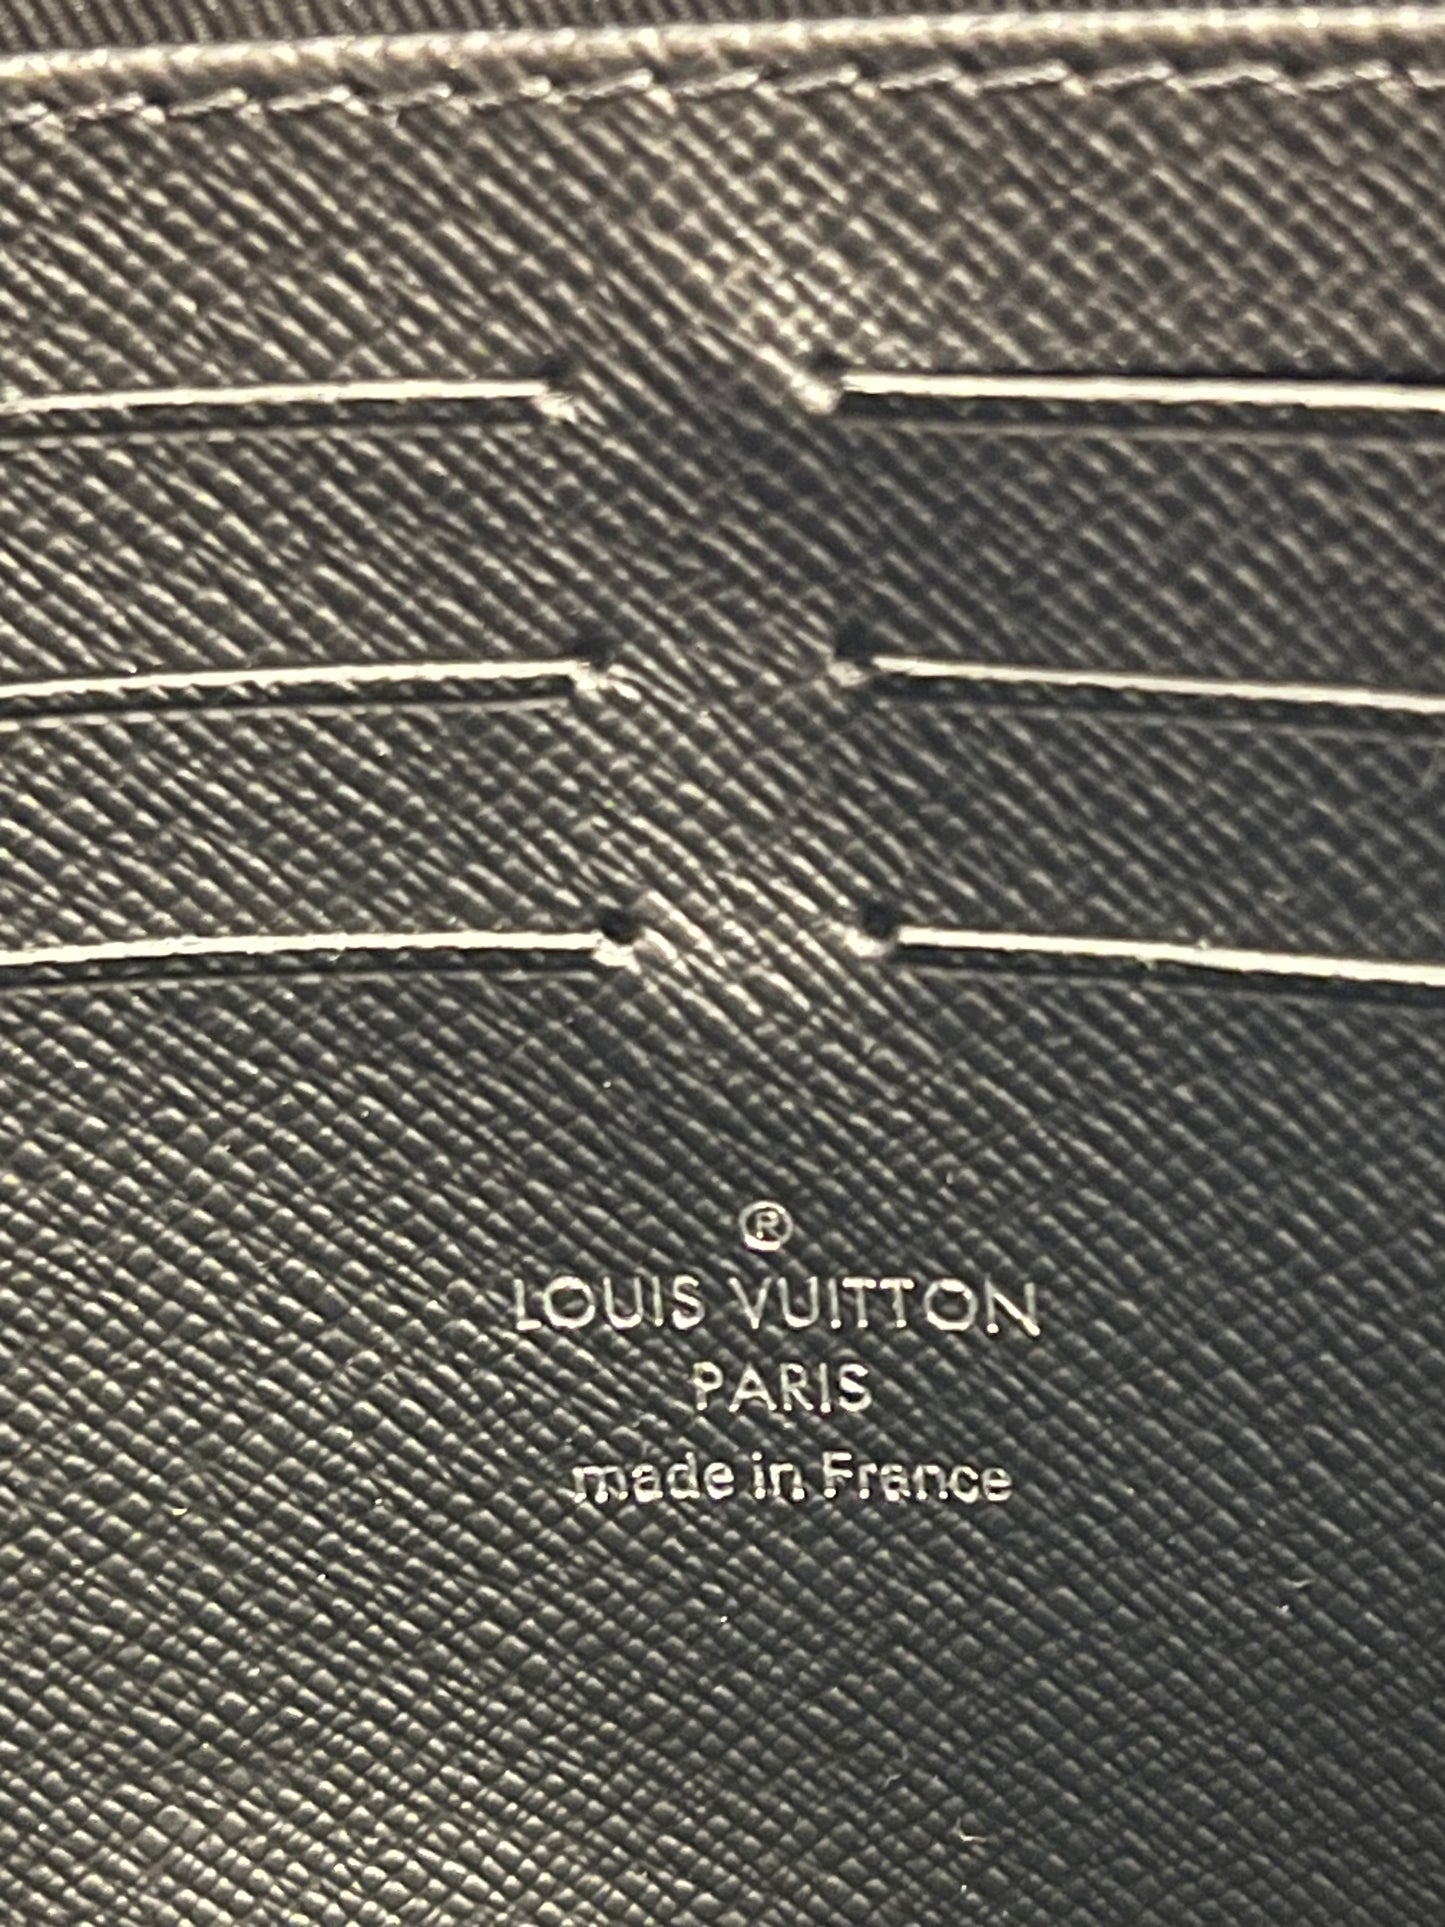 Louis Vuitton Pochette Voyage MM in tela eclipse nera